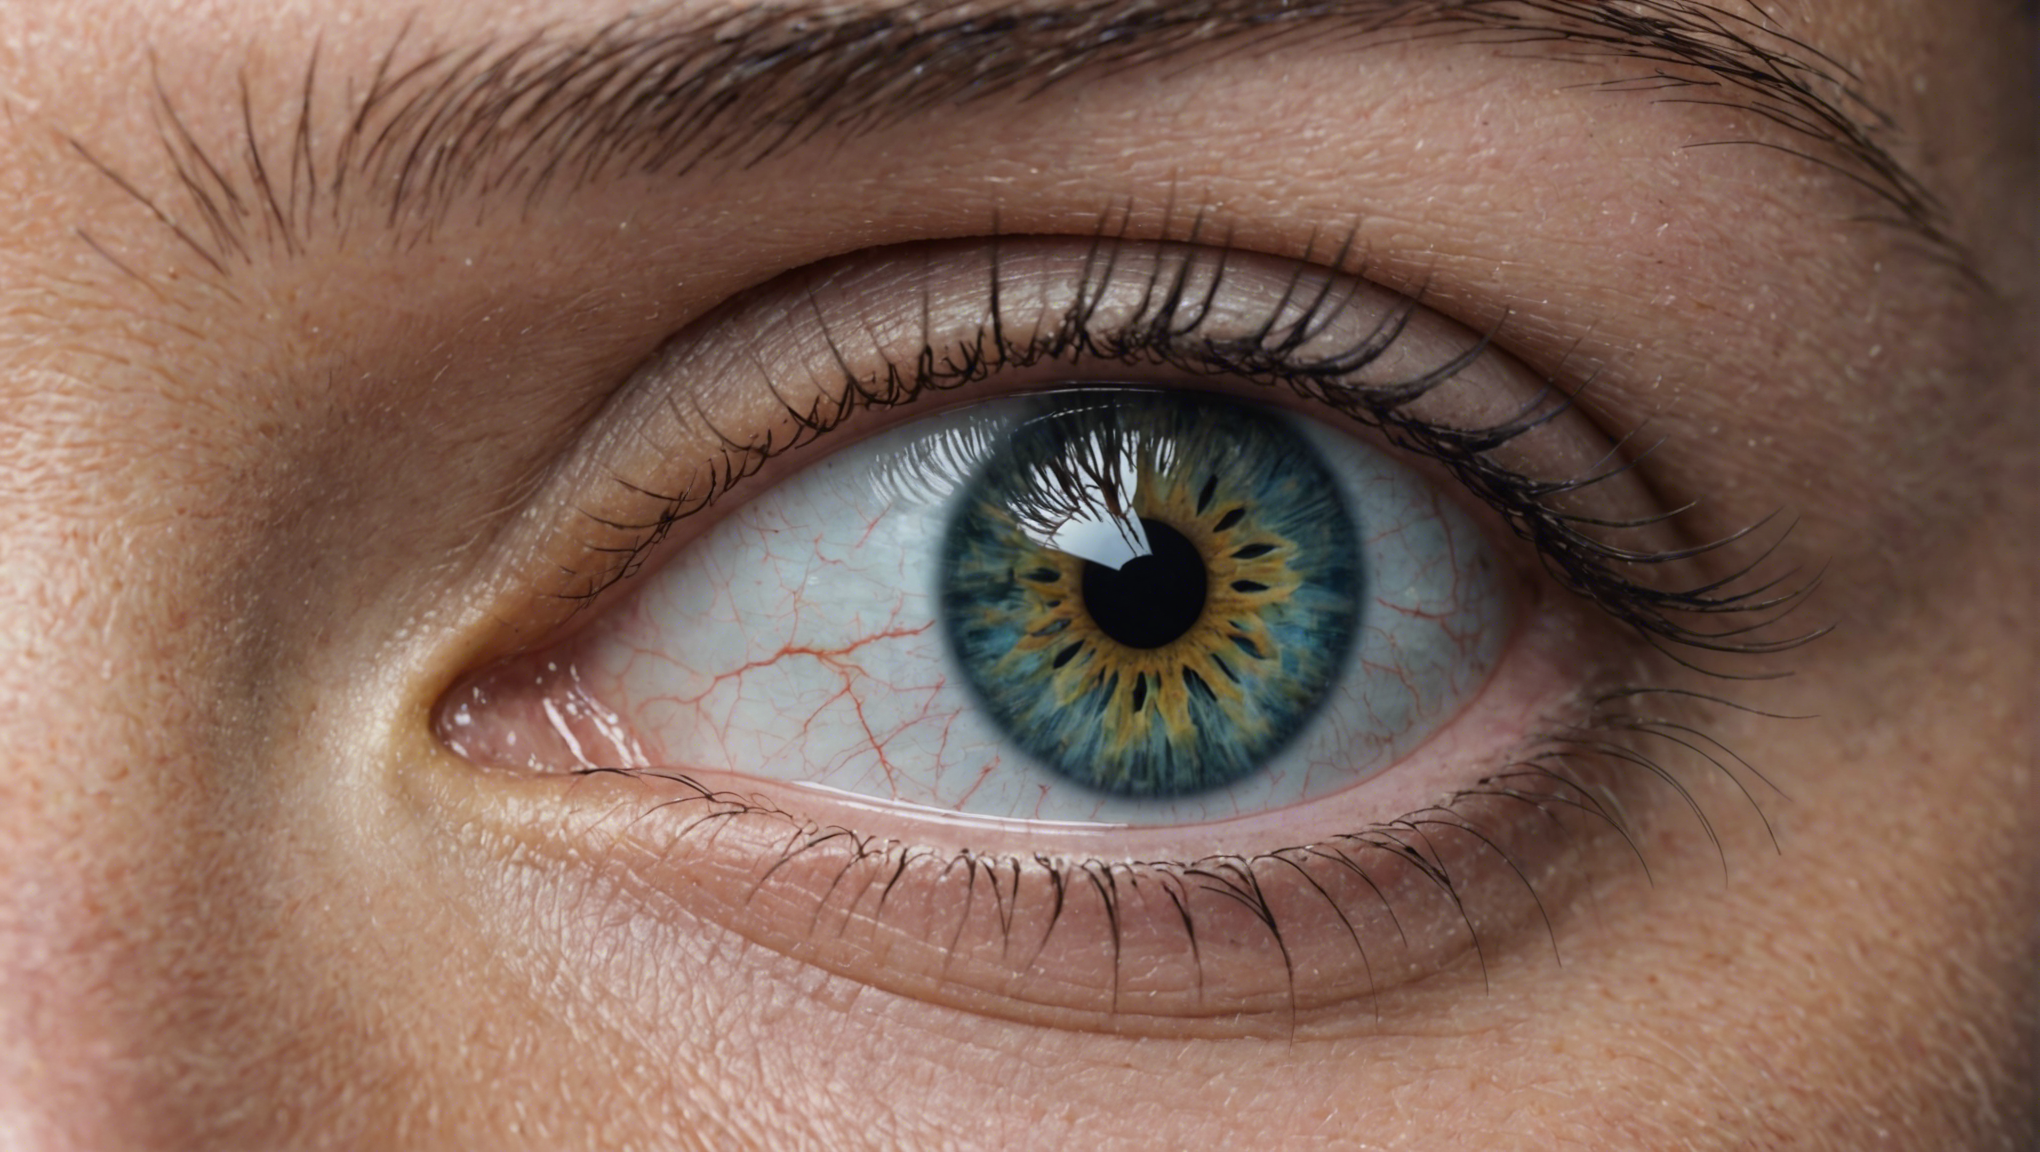 prenez soin de votre santé oculaire avec un suivi médical régulier et des ajustements professionnels pour vos yeux.